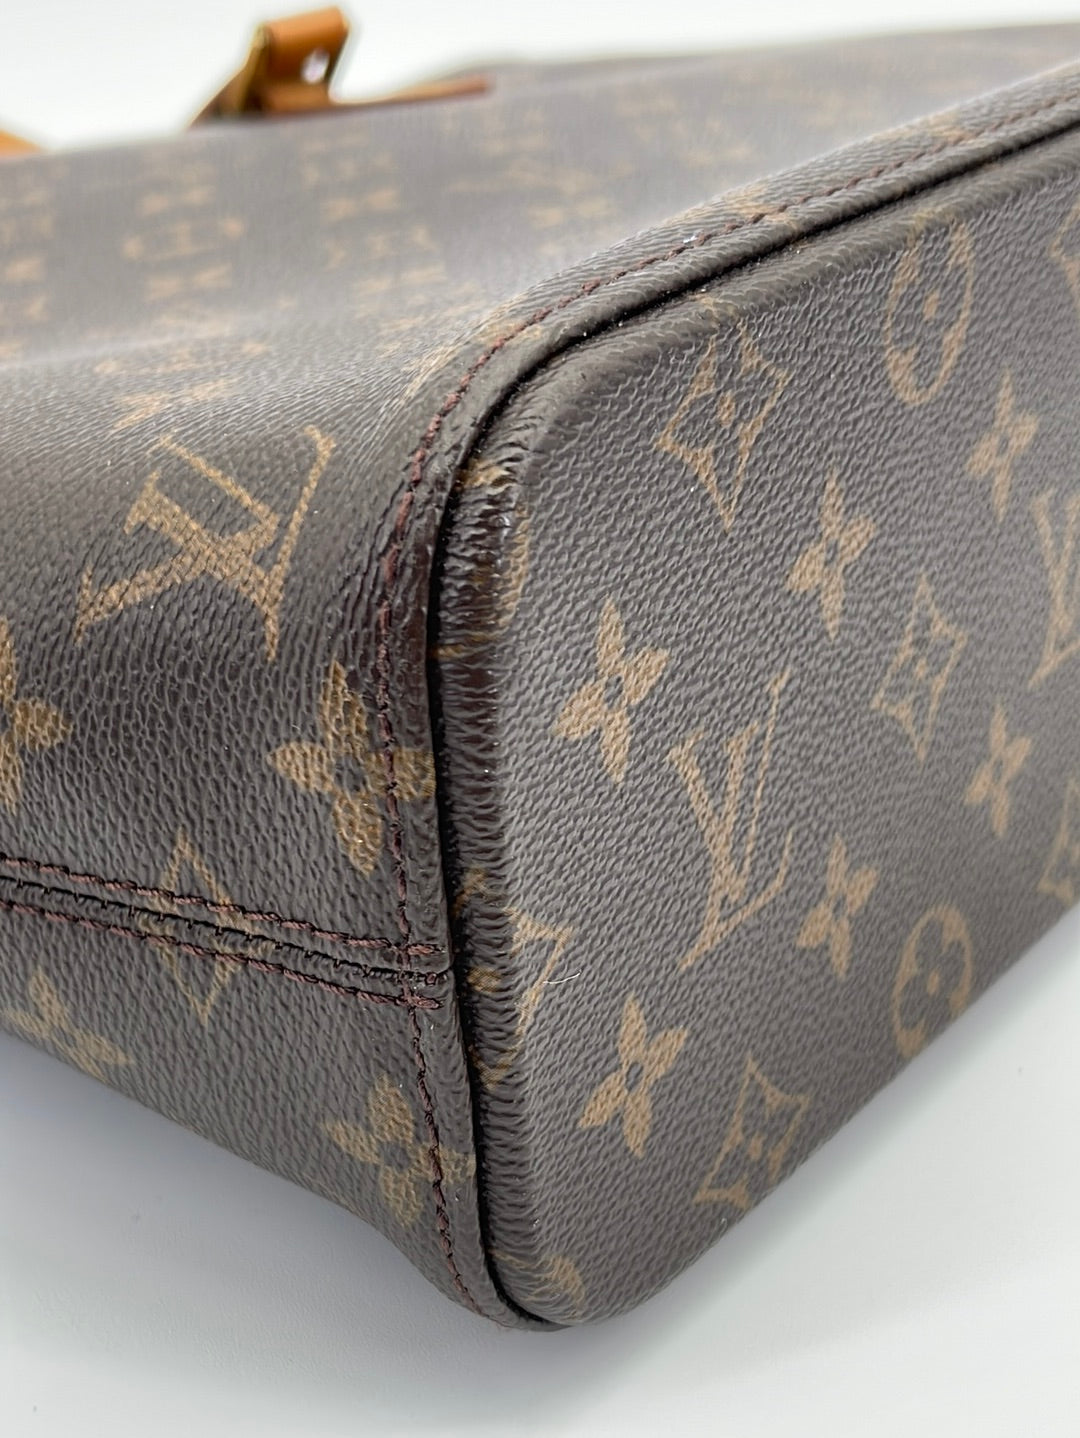 Louis Vuitton 2009 Pre-Owned Monogram Handbag - ShopStyle Satchels & Top  Handle Bags